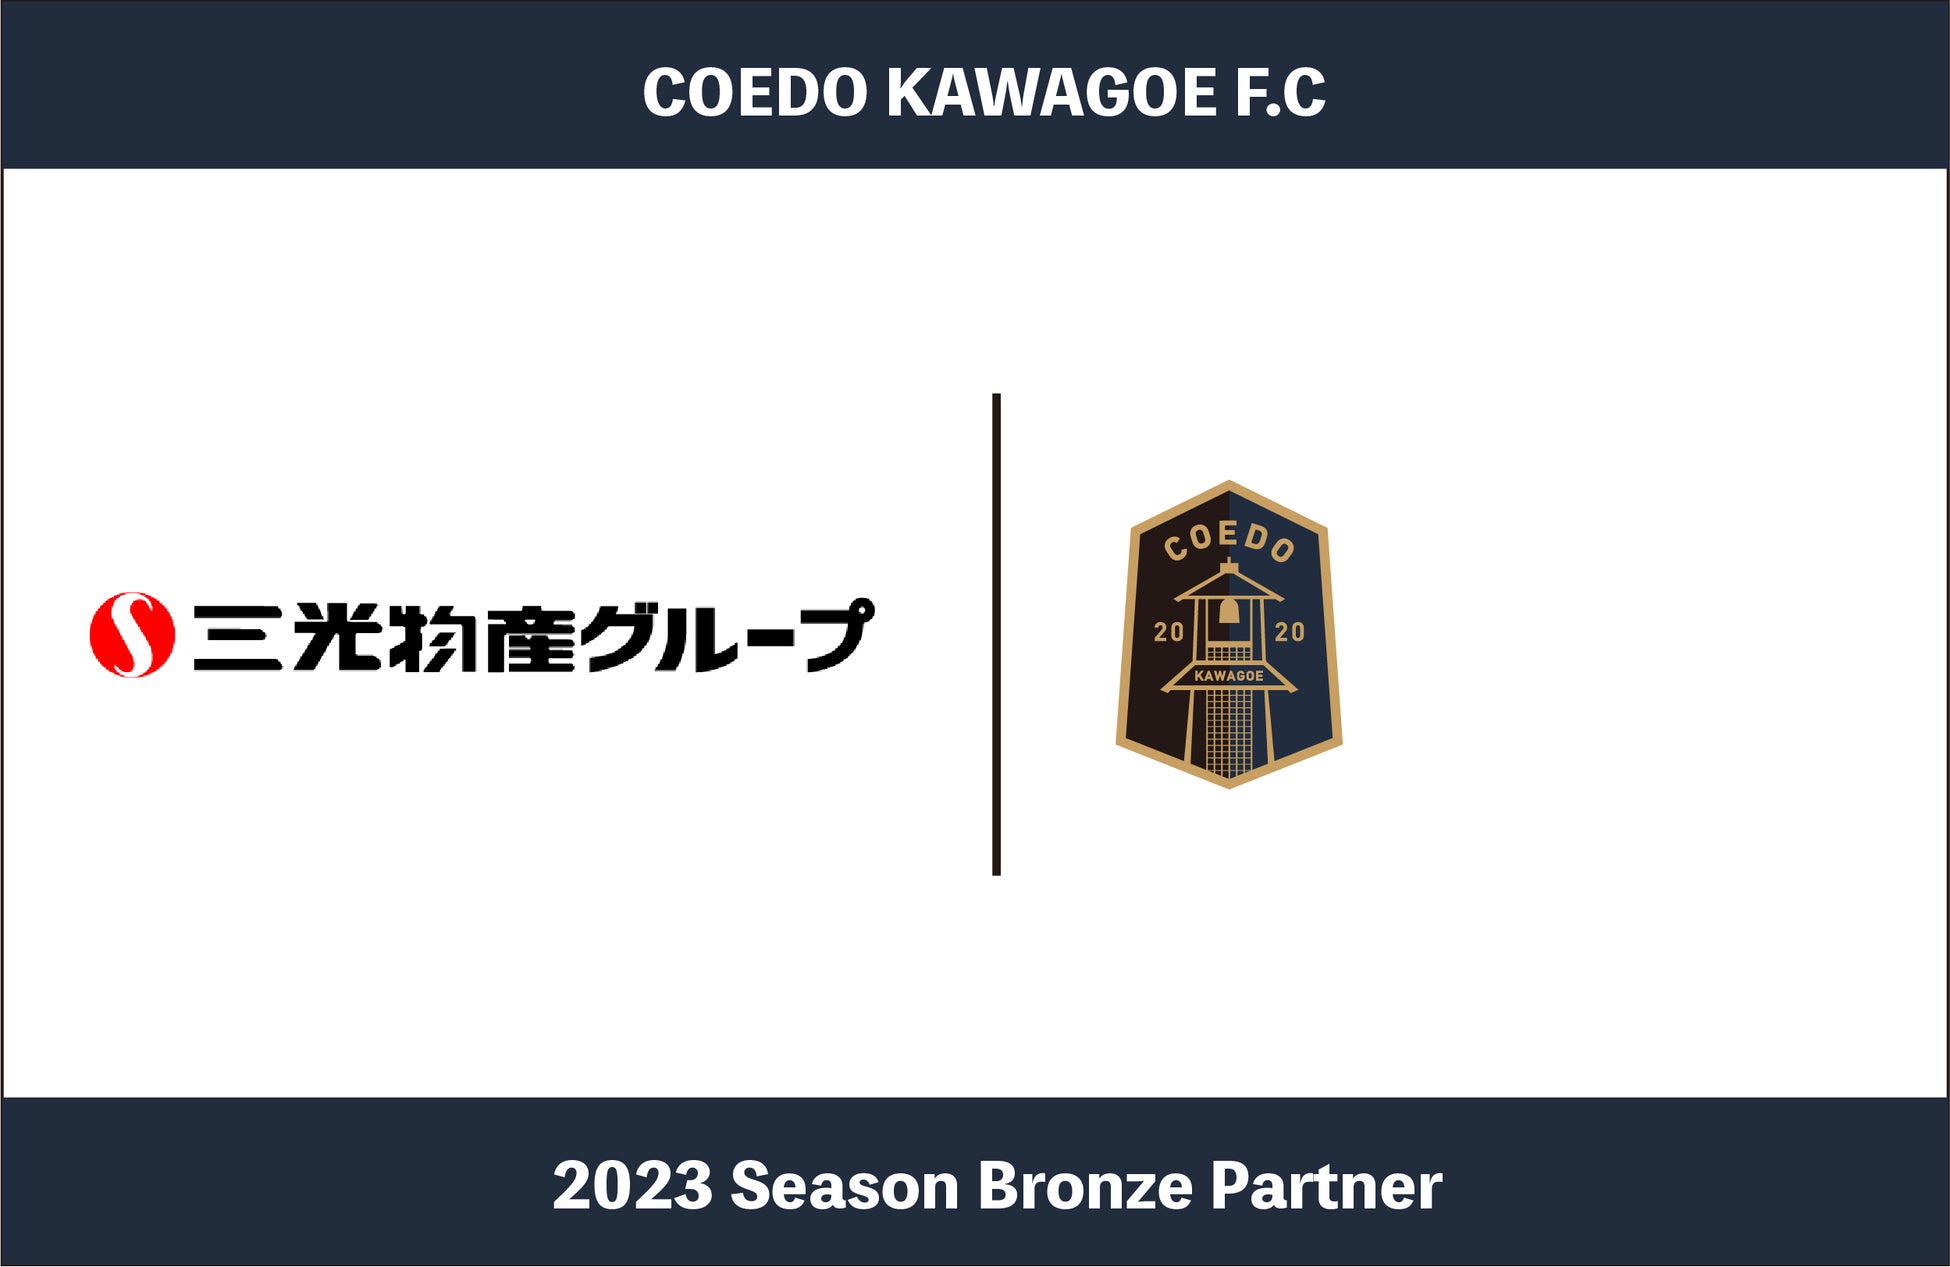 埼玉県川越市からJリーグを目指す「COEDO KAWAGOE F.C」、川越温泉湯遊ランド・ホテル三光等多様な事業を展開する三光物産グループと2023シーズンのブロンズパートナー契約を締結